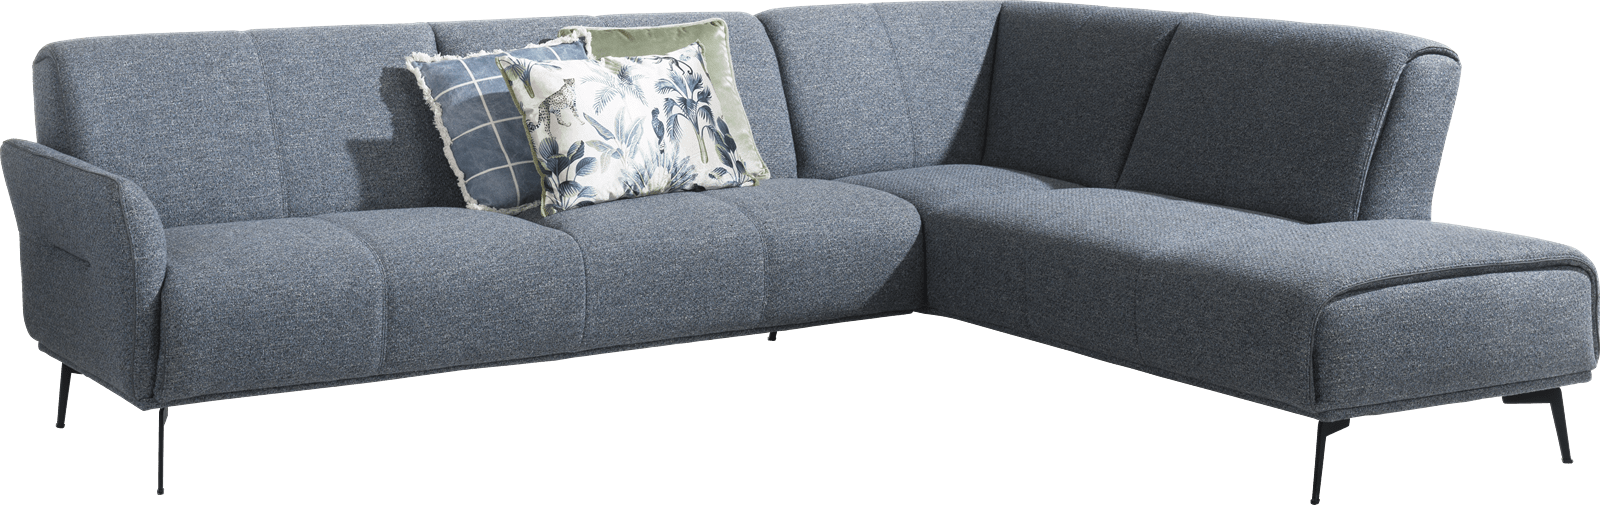 XOOON - Manarola - Minimalistisches Design - Sofas - 3-Sitzer Armlehne links